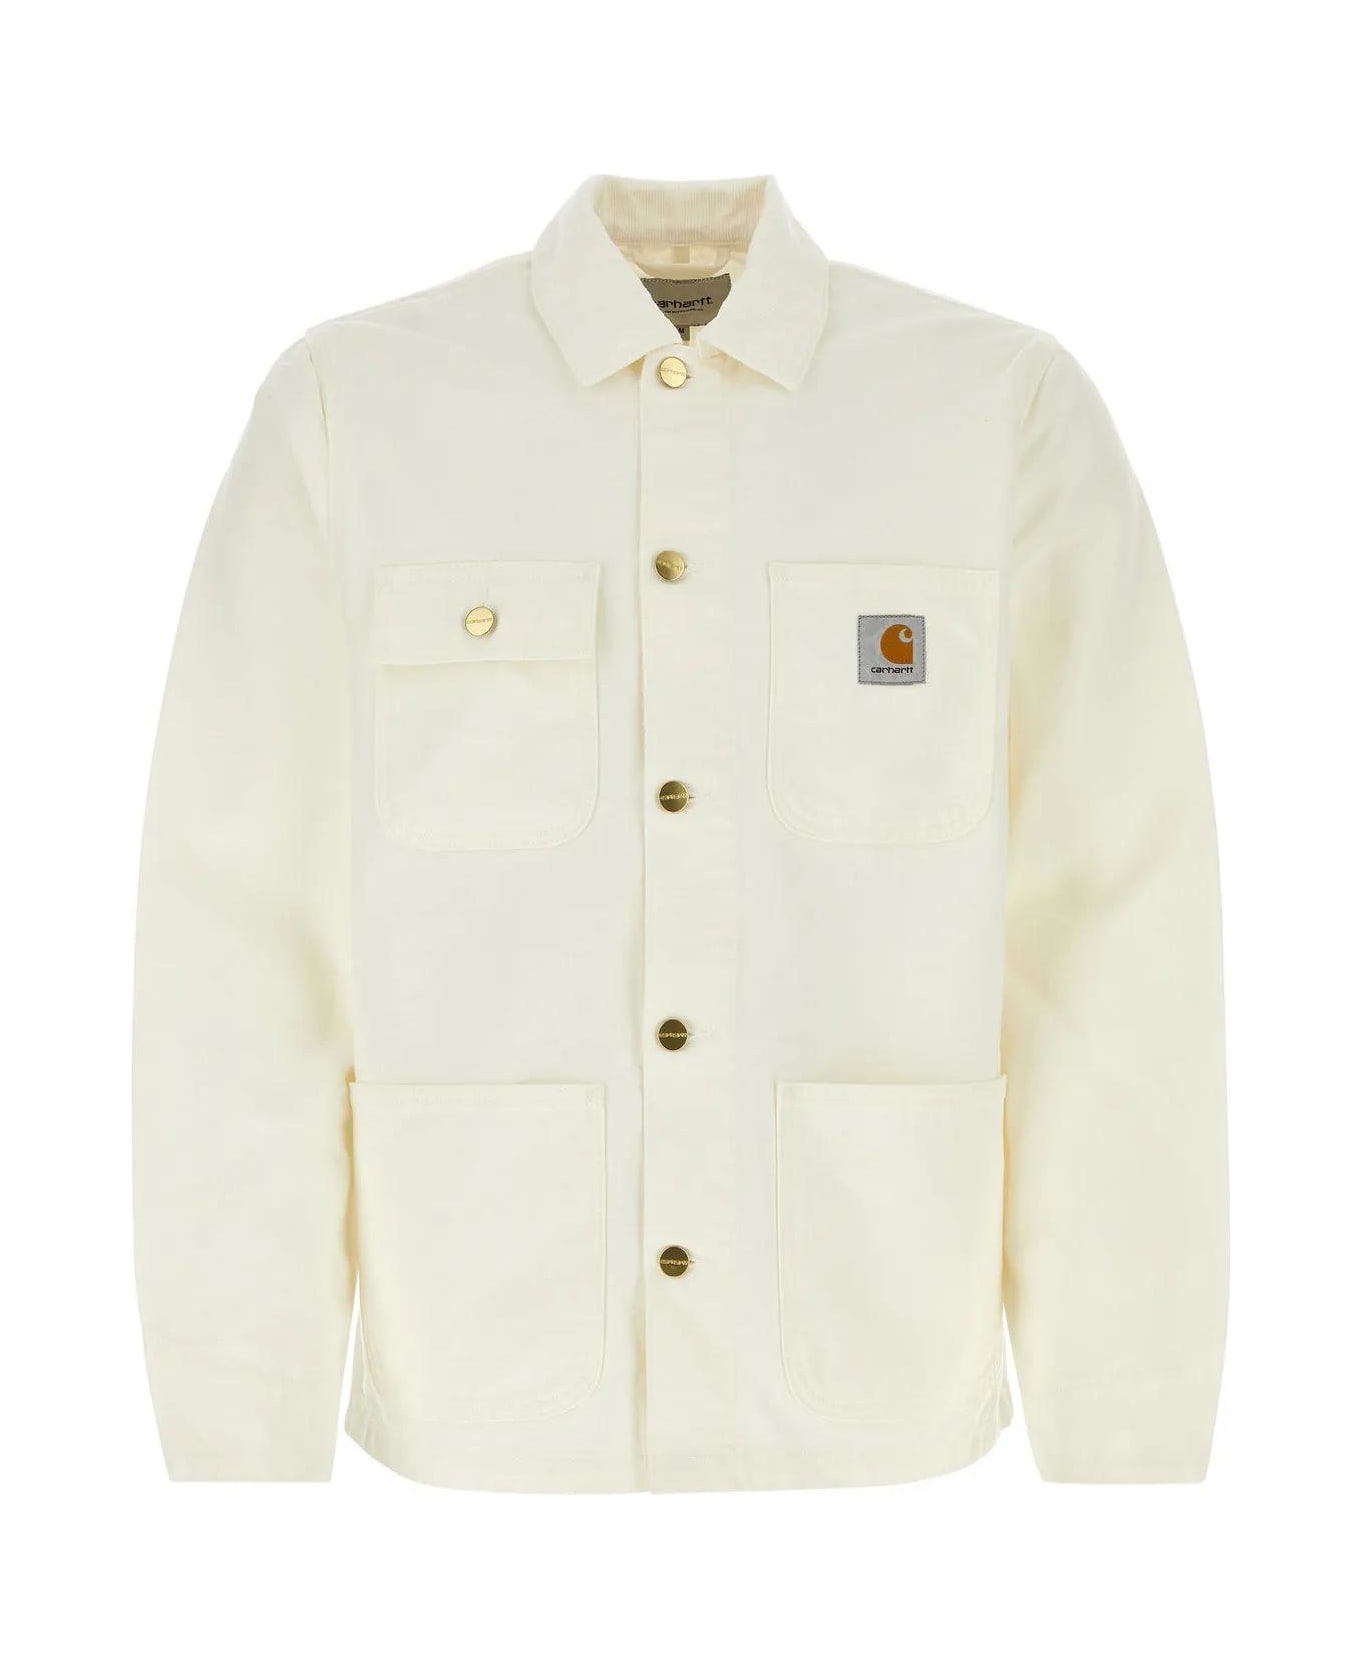 Carhartt WIP White Cotton Detroit Jacket - White